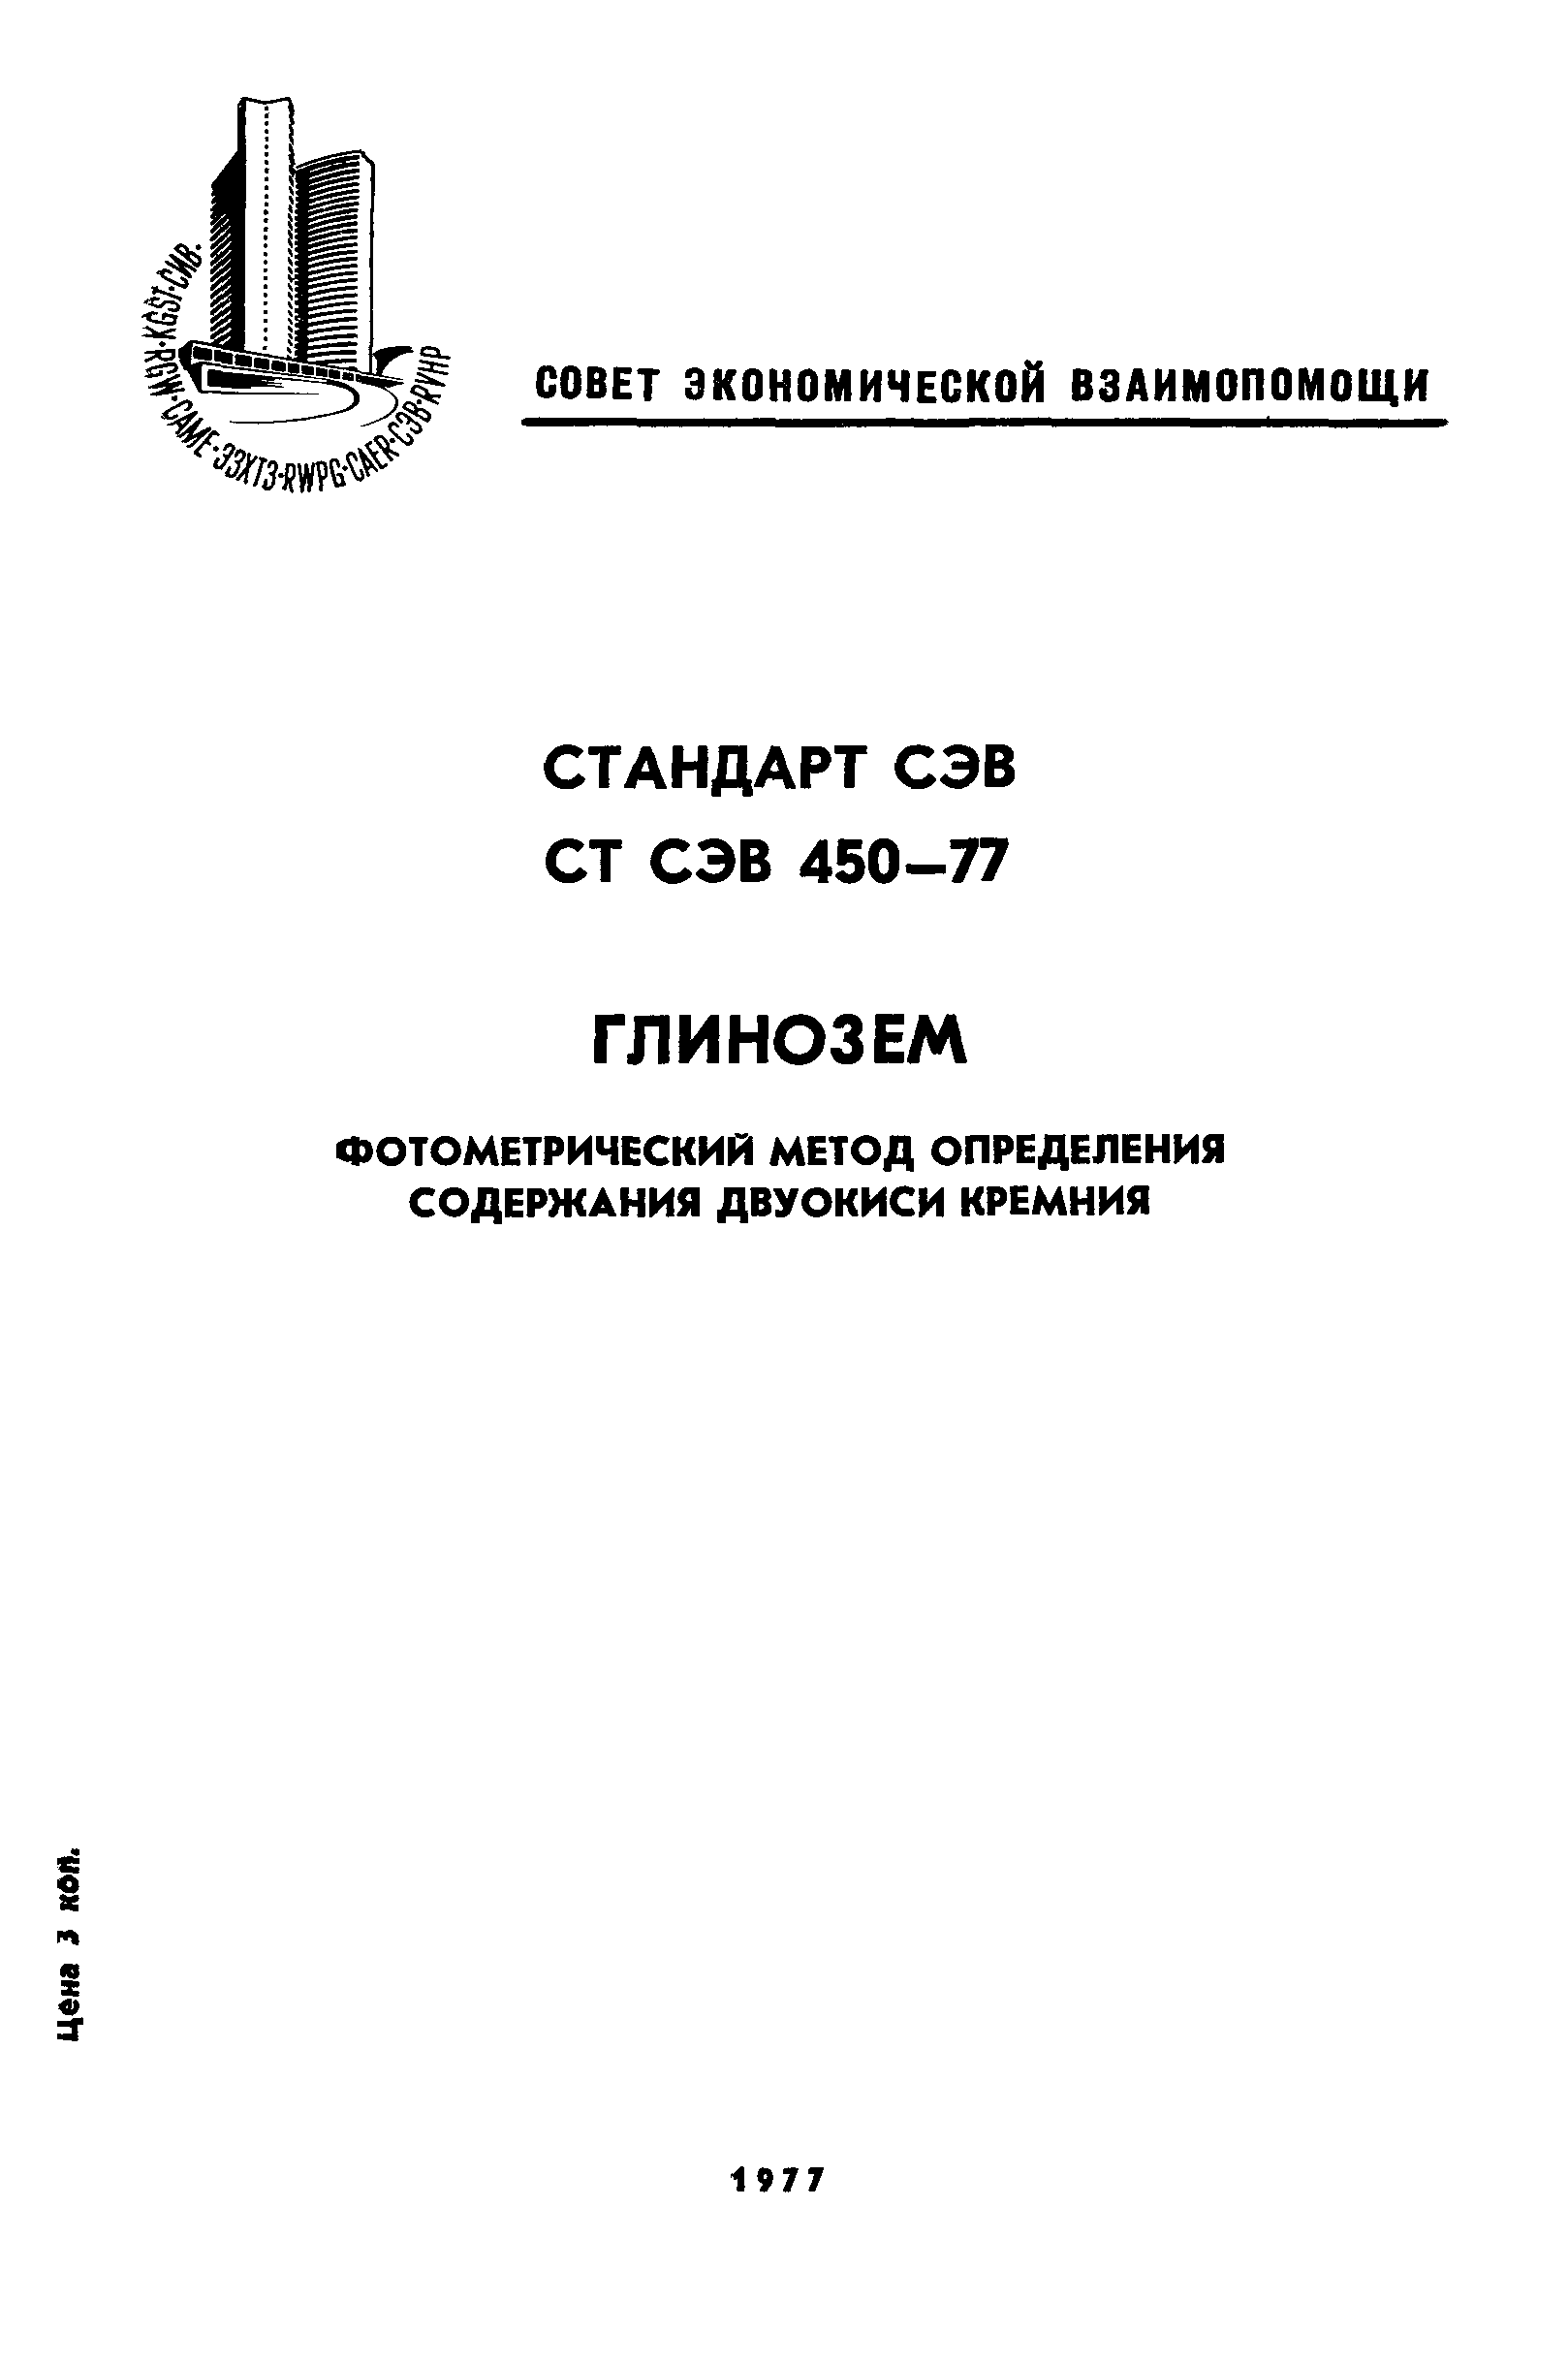 СТ СЭВ 450-77